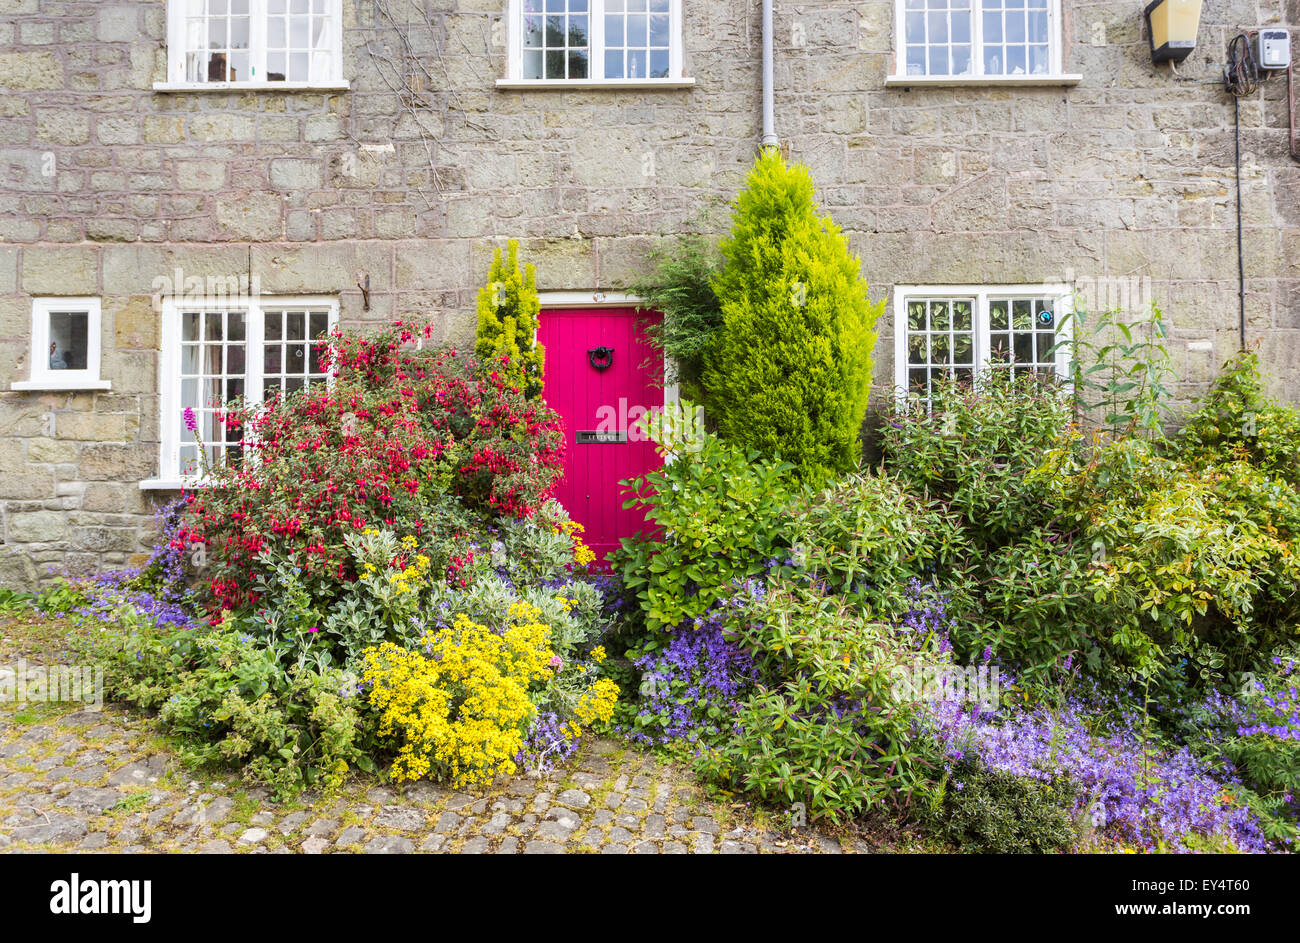 Rote Hütte Tür im lokalen Stil Ferienhaus in Gold Hill, Shaftesbury, Dorset, UK im Sommer, die Lage für die Ridley Scott Hovis Schwarzbrot Anzeige Stockfoto